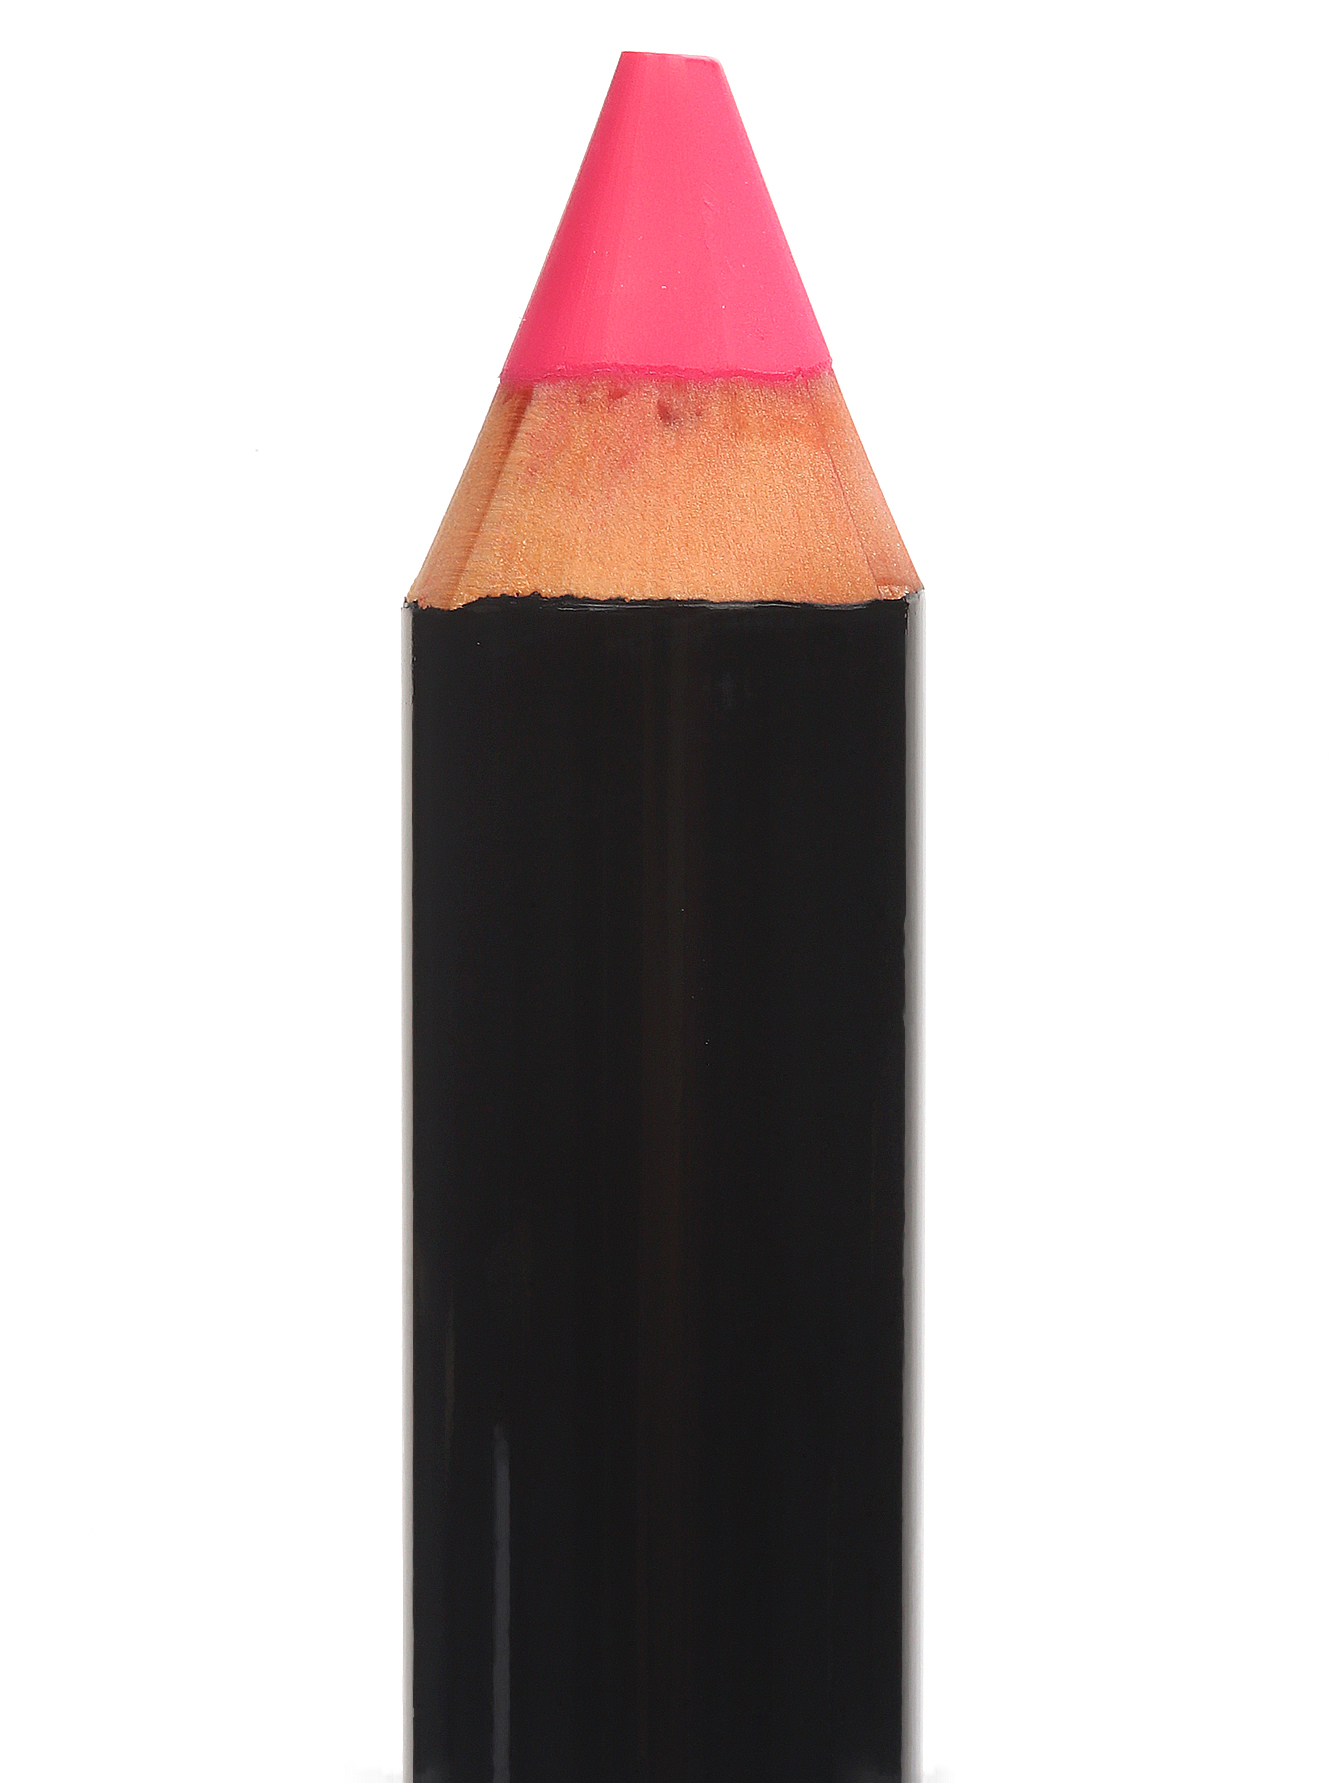  Карандаш для губ - Hot Pink, Art Sticks - Общий вид